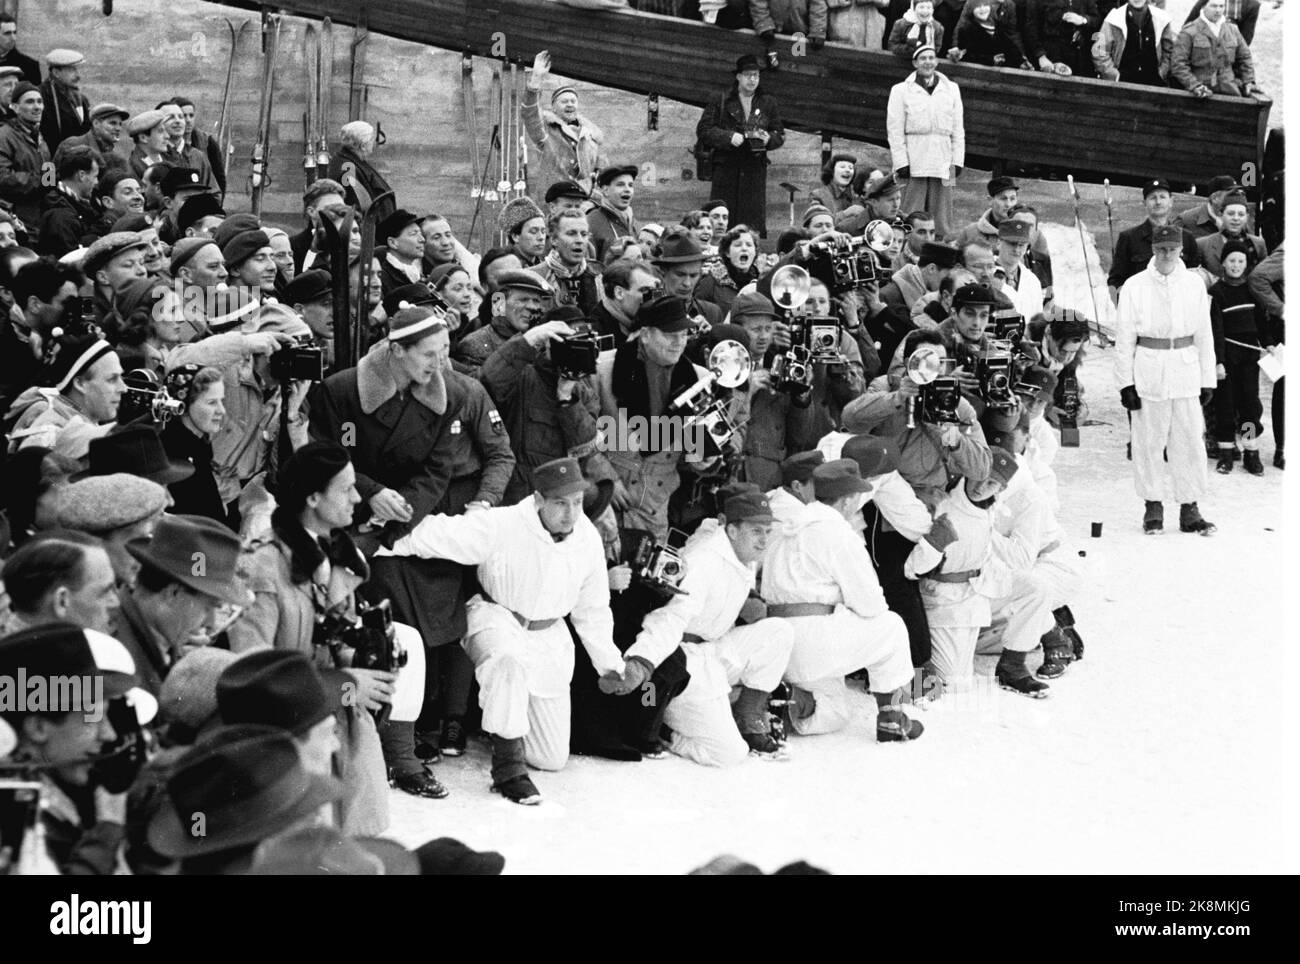 Olympische Spiele 1952 in Oslo. Skilanglauf, Staffel, Männer. Hier sind Teamleiter, Pressefotografen und Zuschauer bei Sletta am Holmenkollbakken. Bestellungsbeamte in weißen Deckanzügen versuchen, die Menschen zurückzuhalten. Finnland gewann vor Norwegen und Schweden. Foto: Current / NTB Stockfoto